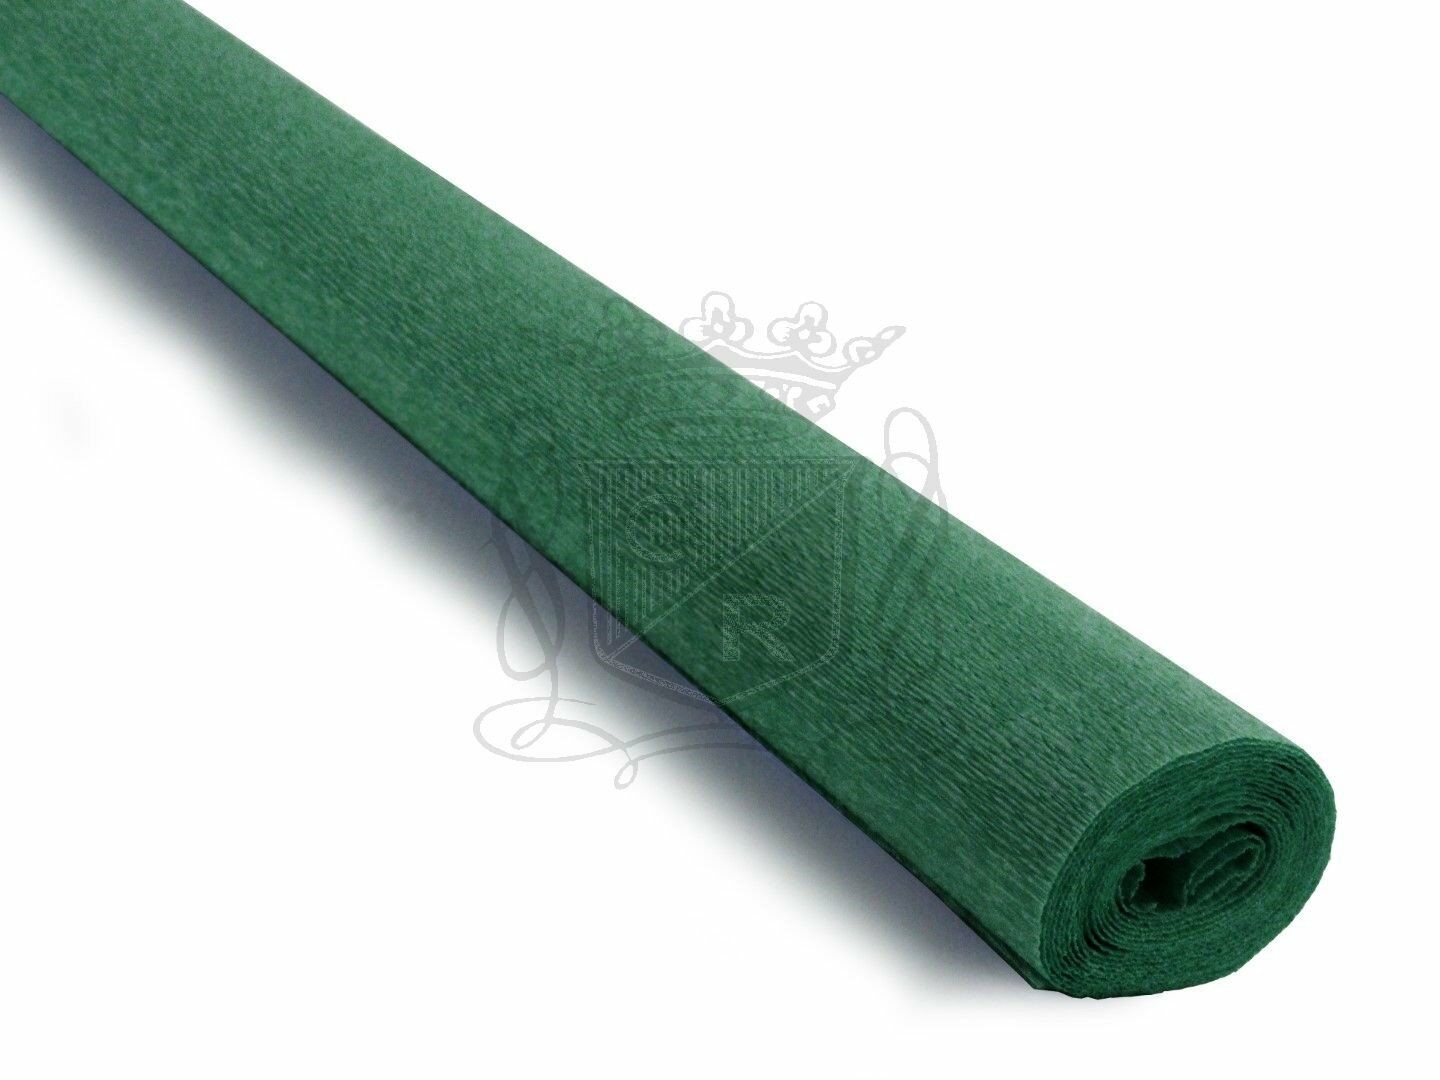 İtalyan Krapon Kağıdı No:369 - Zümrüt Yeşili - Emerald Green 90 gr. 50*150 cm